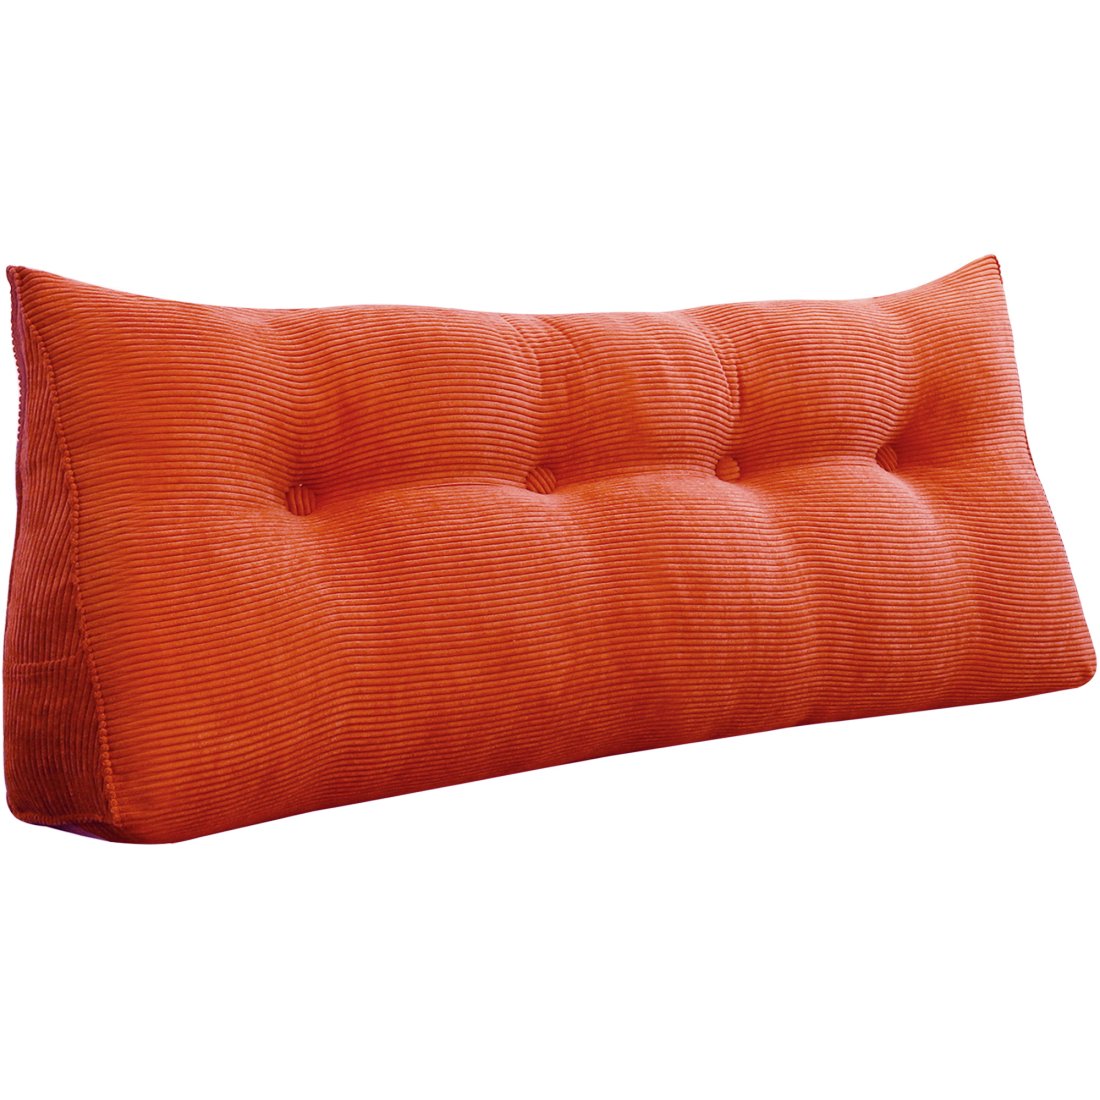 https://www.zencent.com/wp-content/uploads/2020/06/996_wedge-pillow-cushion-32.jpg